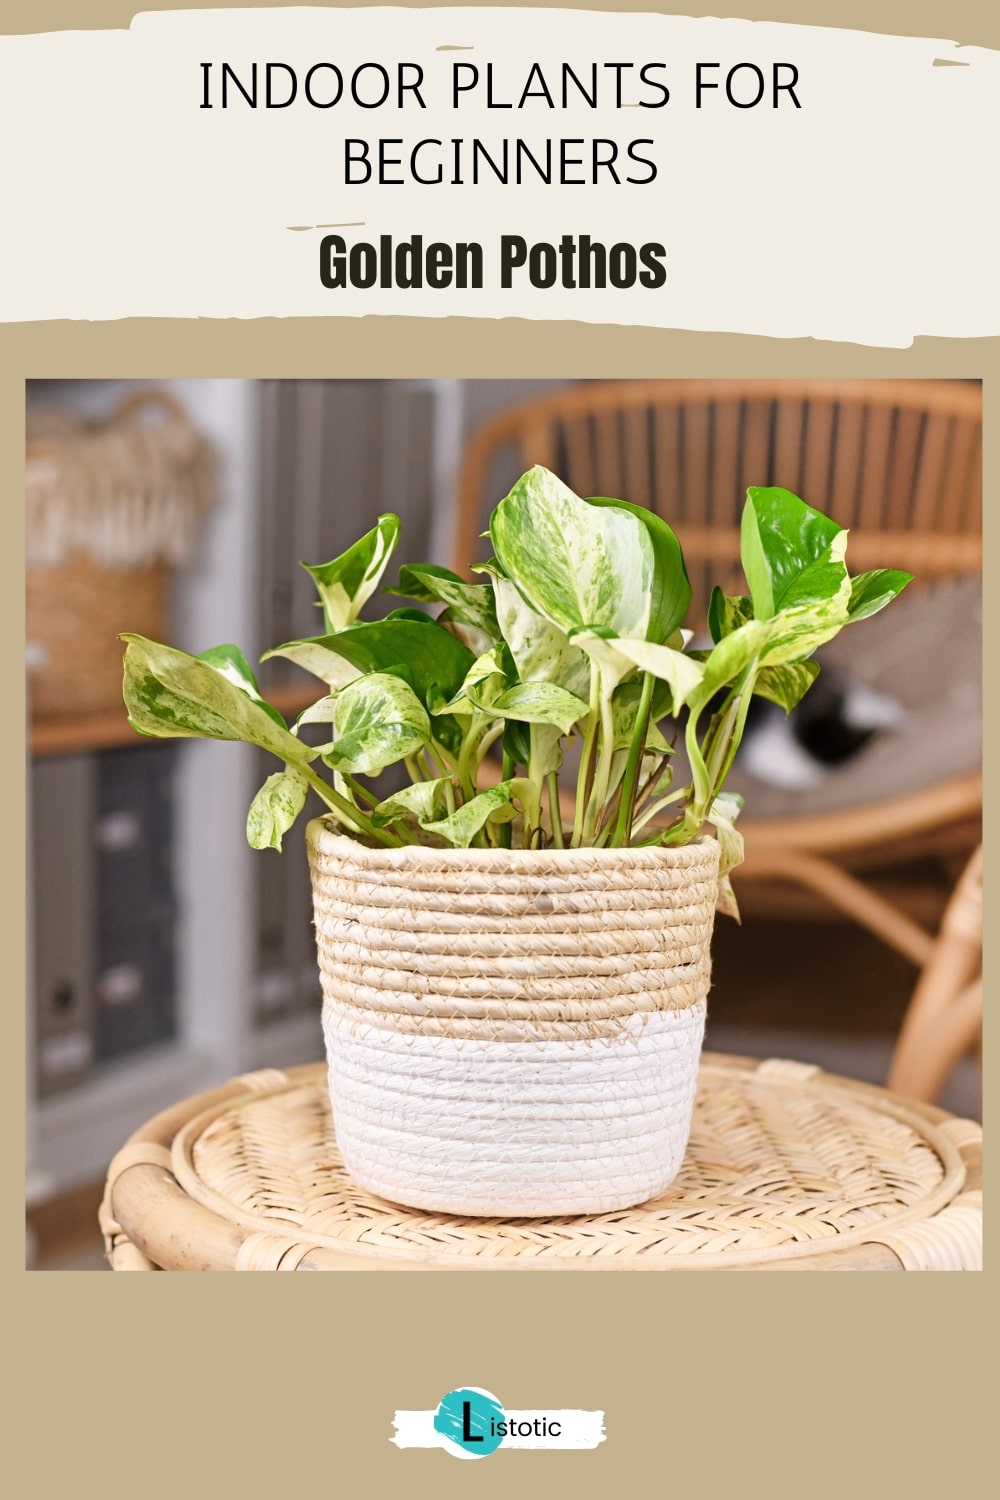 golden pothos plant in a basket